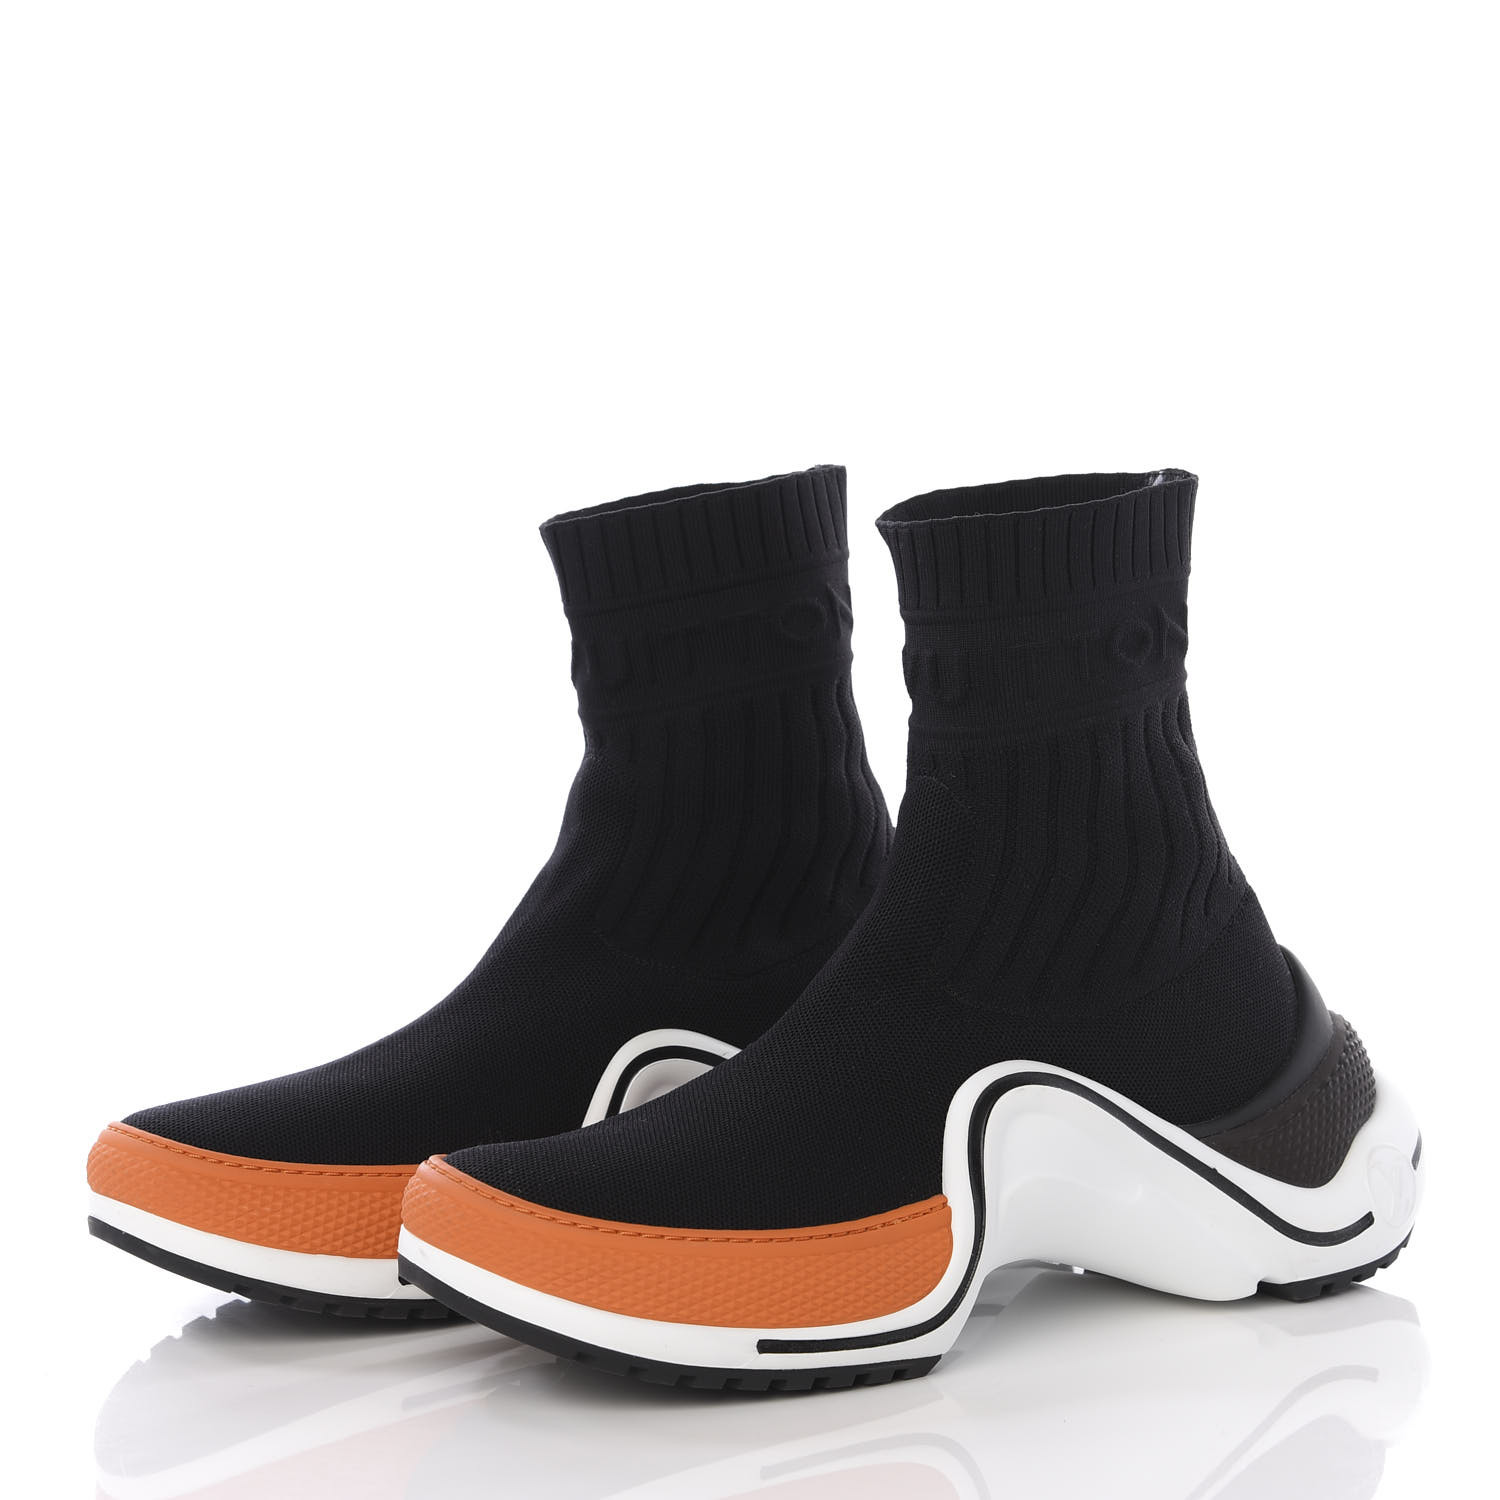 LOUIS VUITTON Stretch Textile Monogram LV Archlight Sneaker Boots 38.5 Black 568876